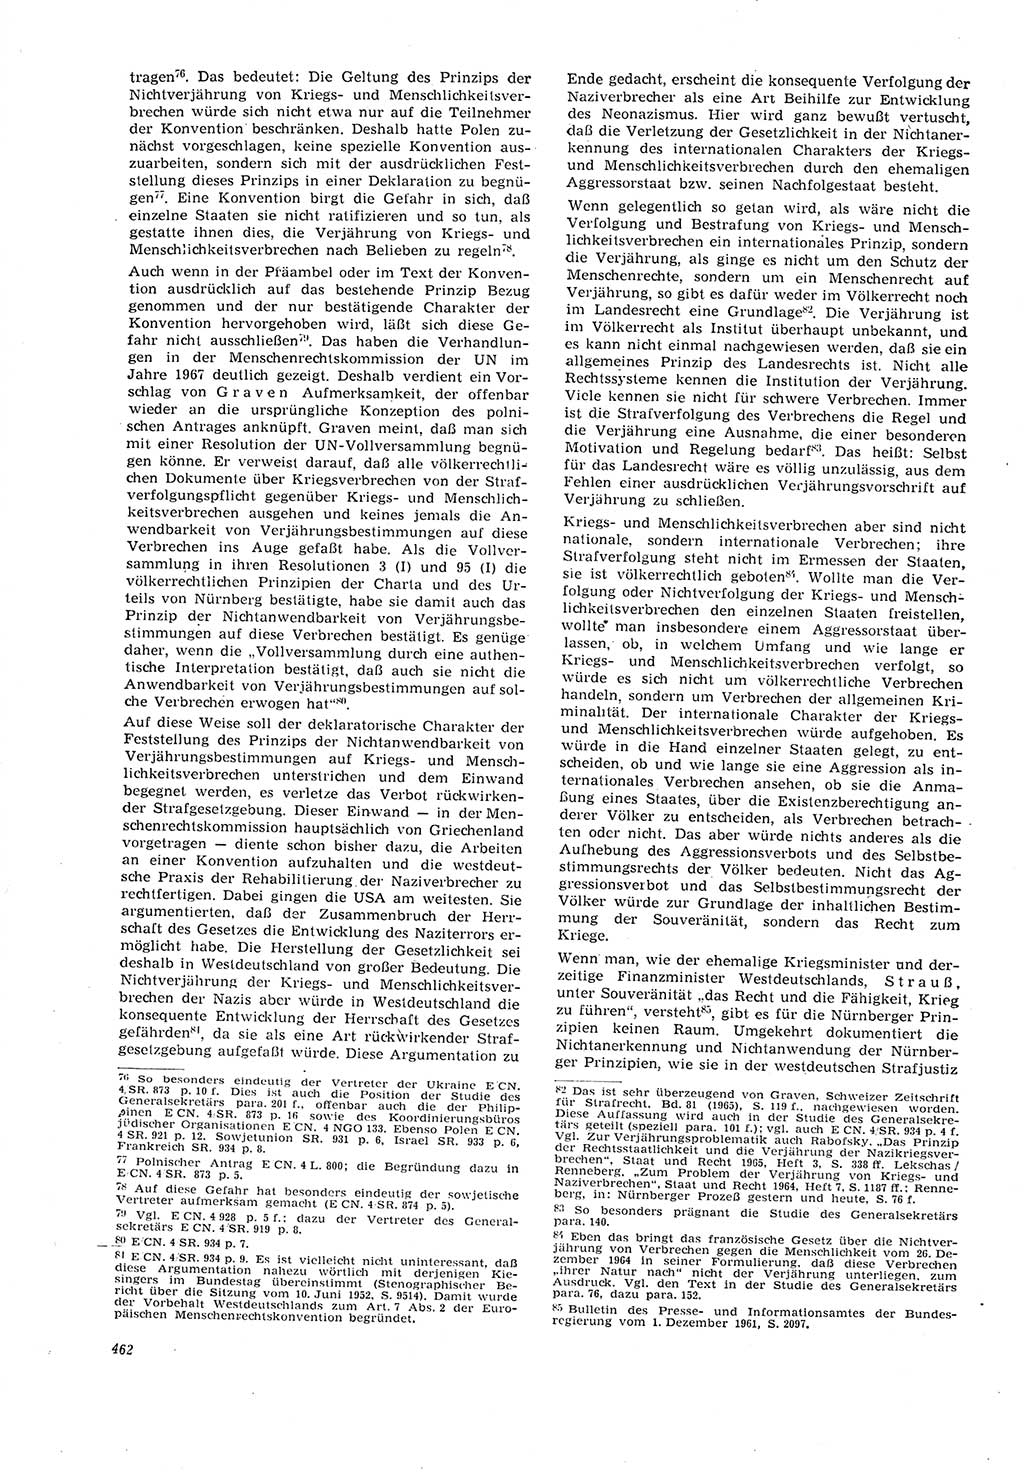 Neue Justiz (NJ), Zeitschrift für Recht und Rechtswissenschaft [Deutsche Demokratische Republik (DDR)], 21. Jahrgang 1967, Seite 462 (NJ DDR 1967, S. 462)